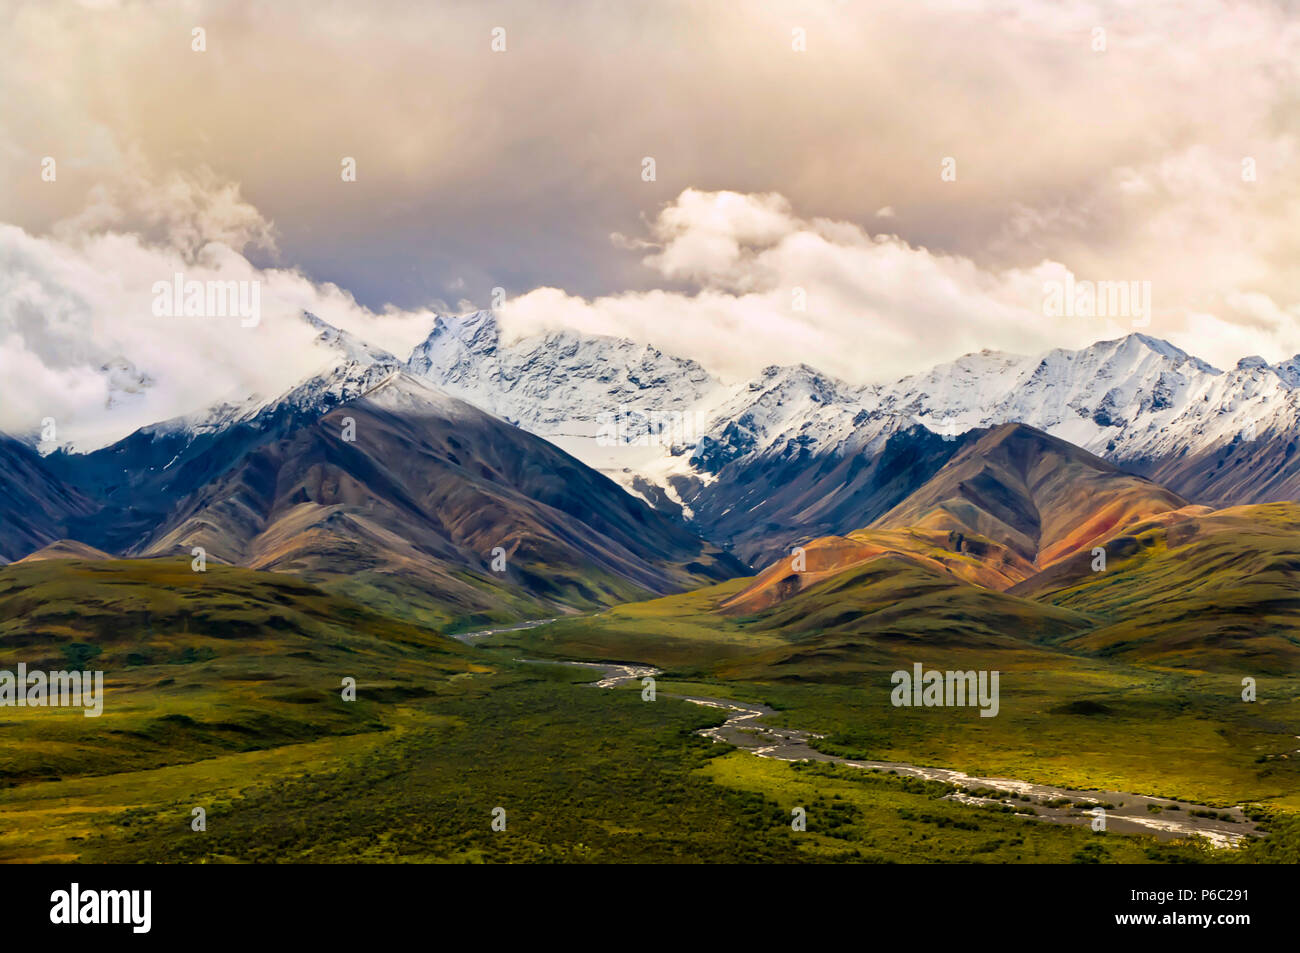 Vue sur une vallée verdoyante avec des montagnes de neige et un ciel nuageux dans l'arrière-plan dans le Parc National Denali et préserver, de l'Alaska Banque D'Images